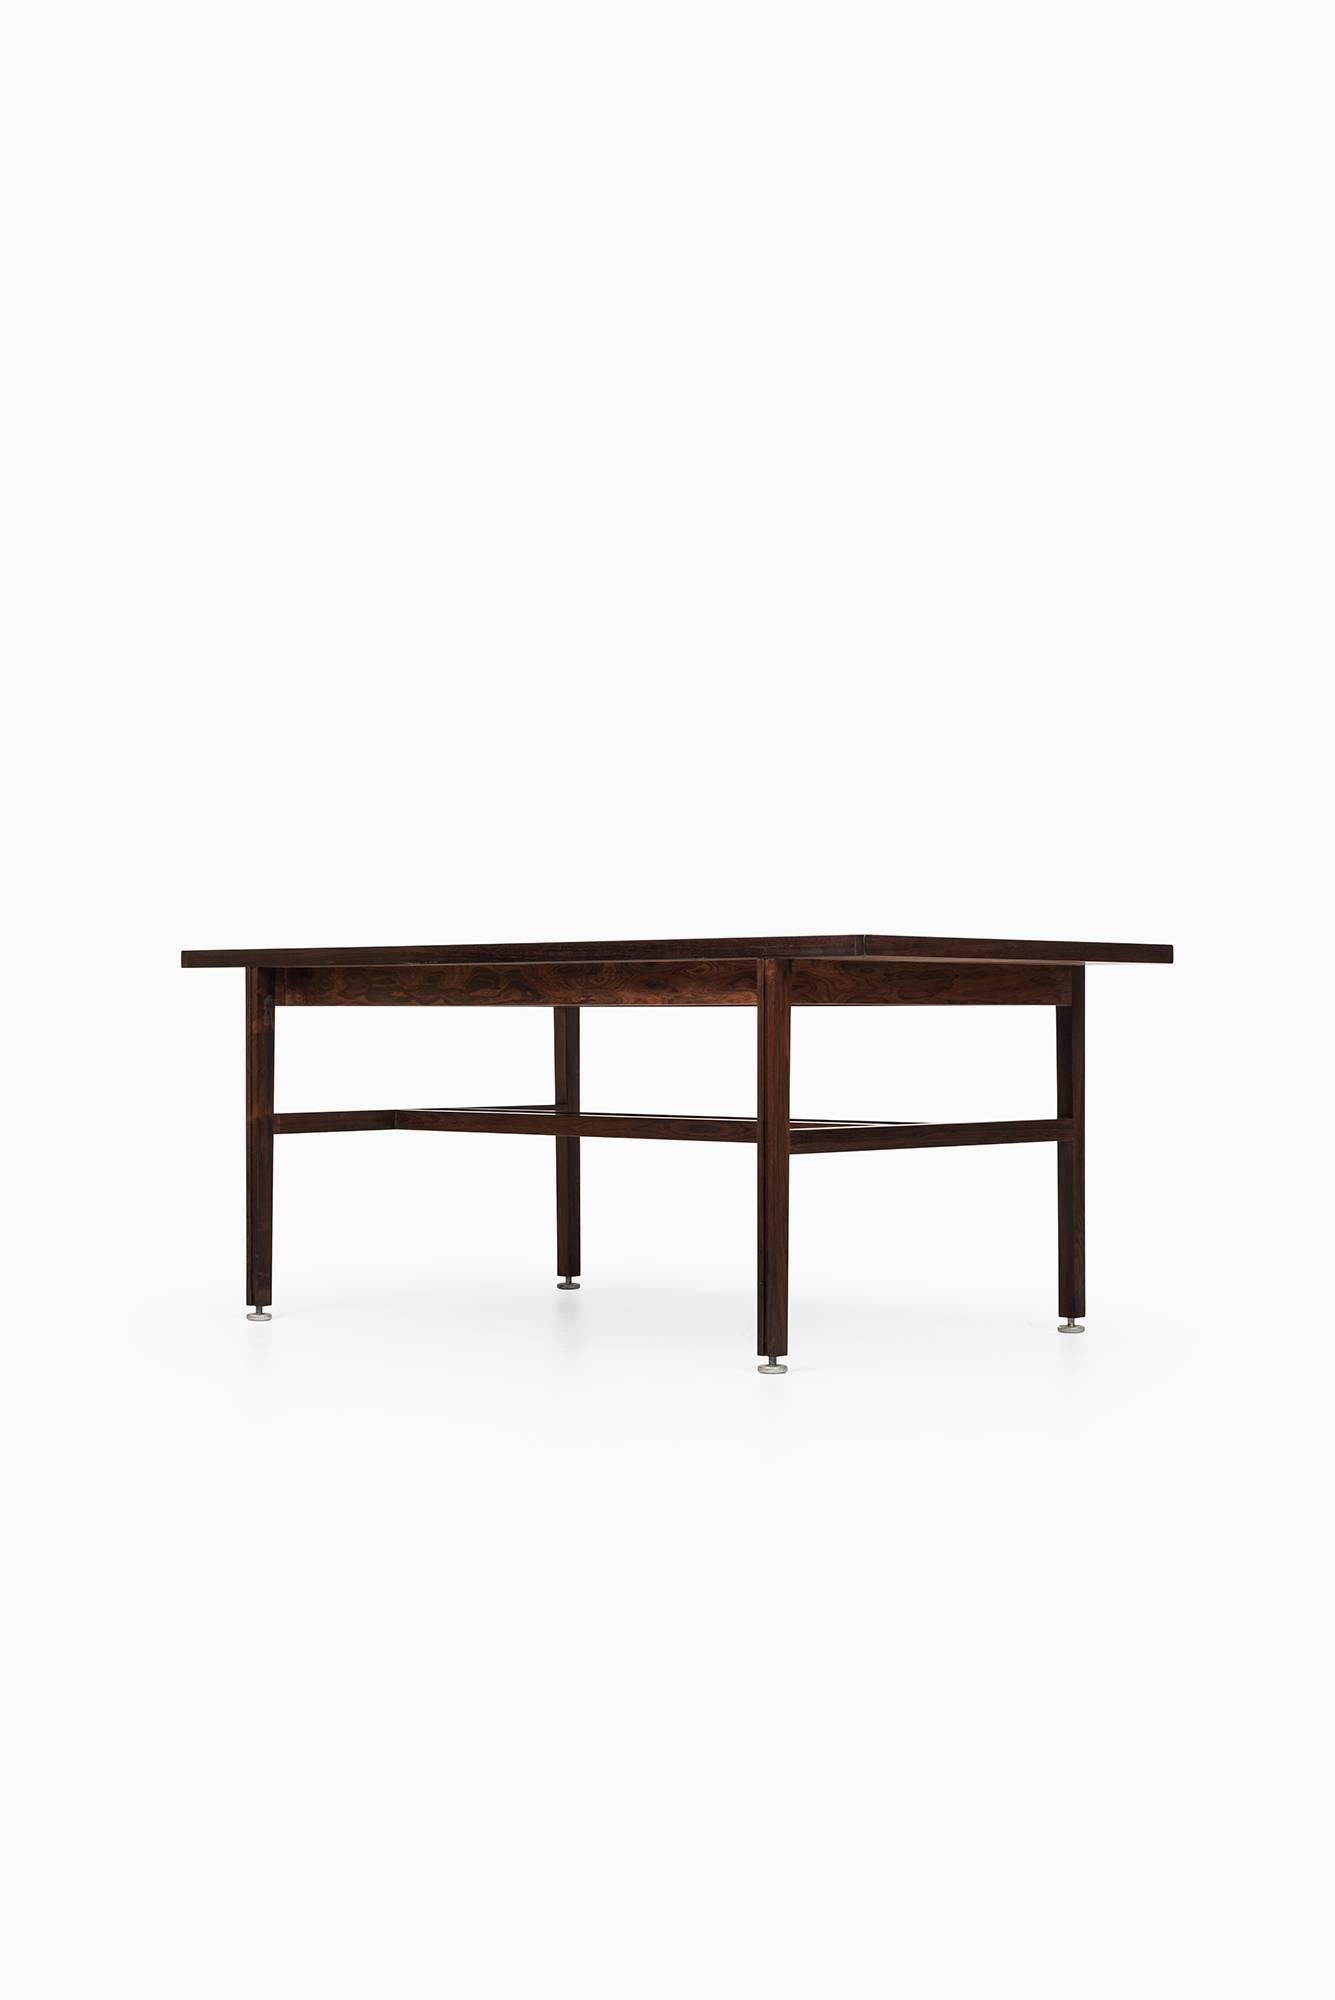 Scandinavian Modern Jens Risom Table Model 96 by Jens Risom Design in America